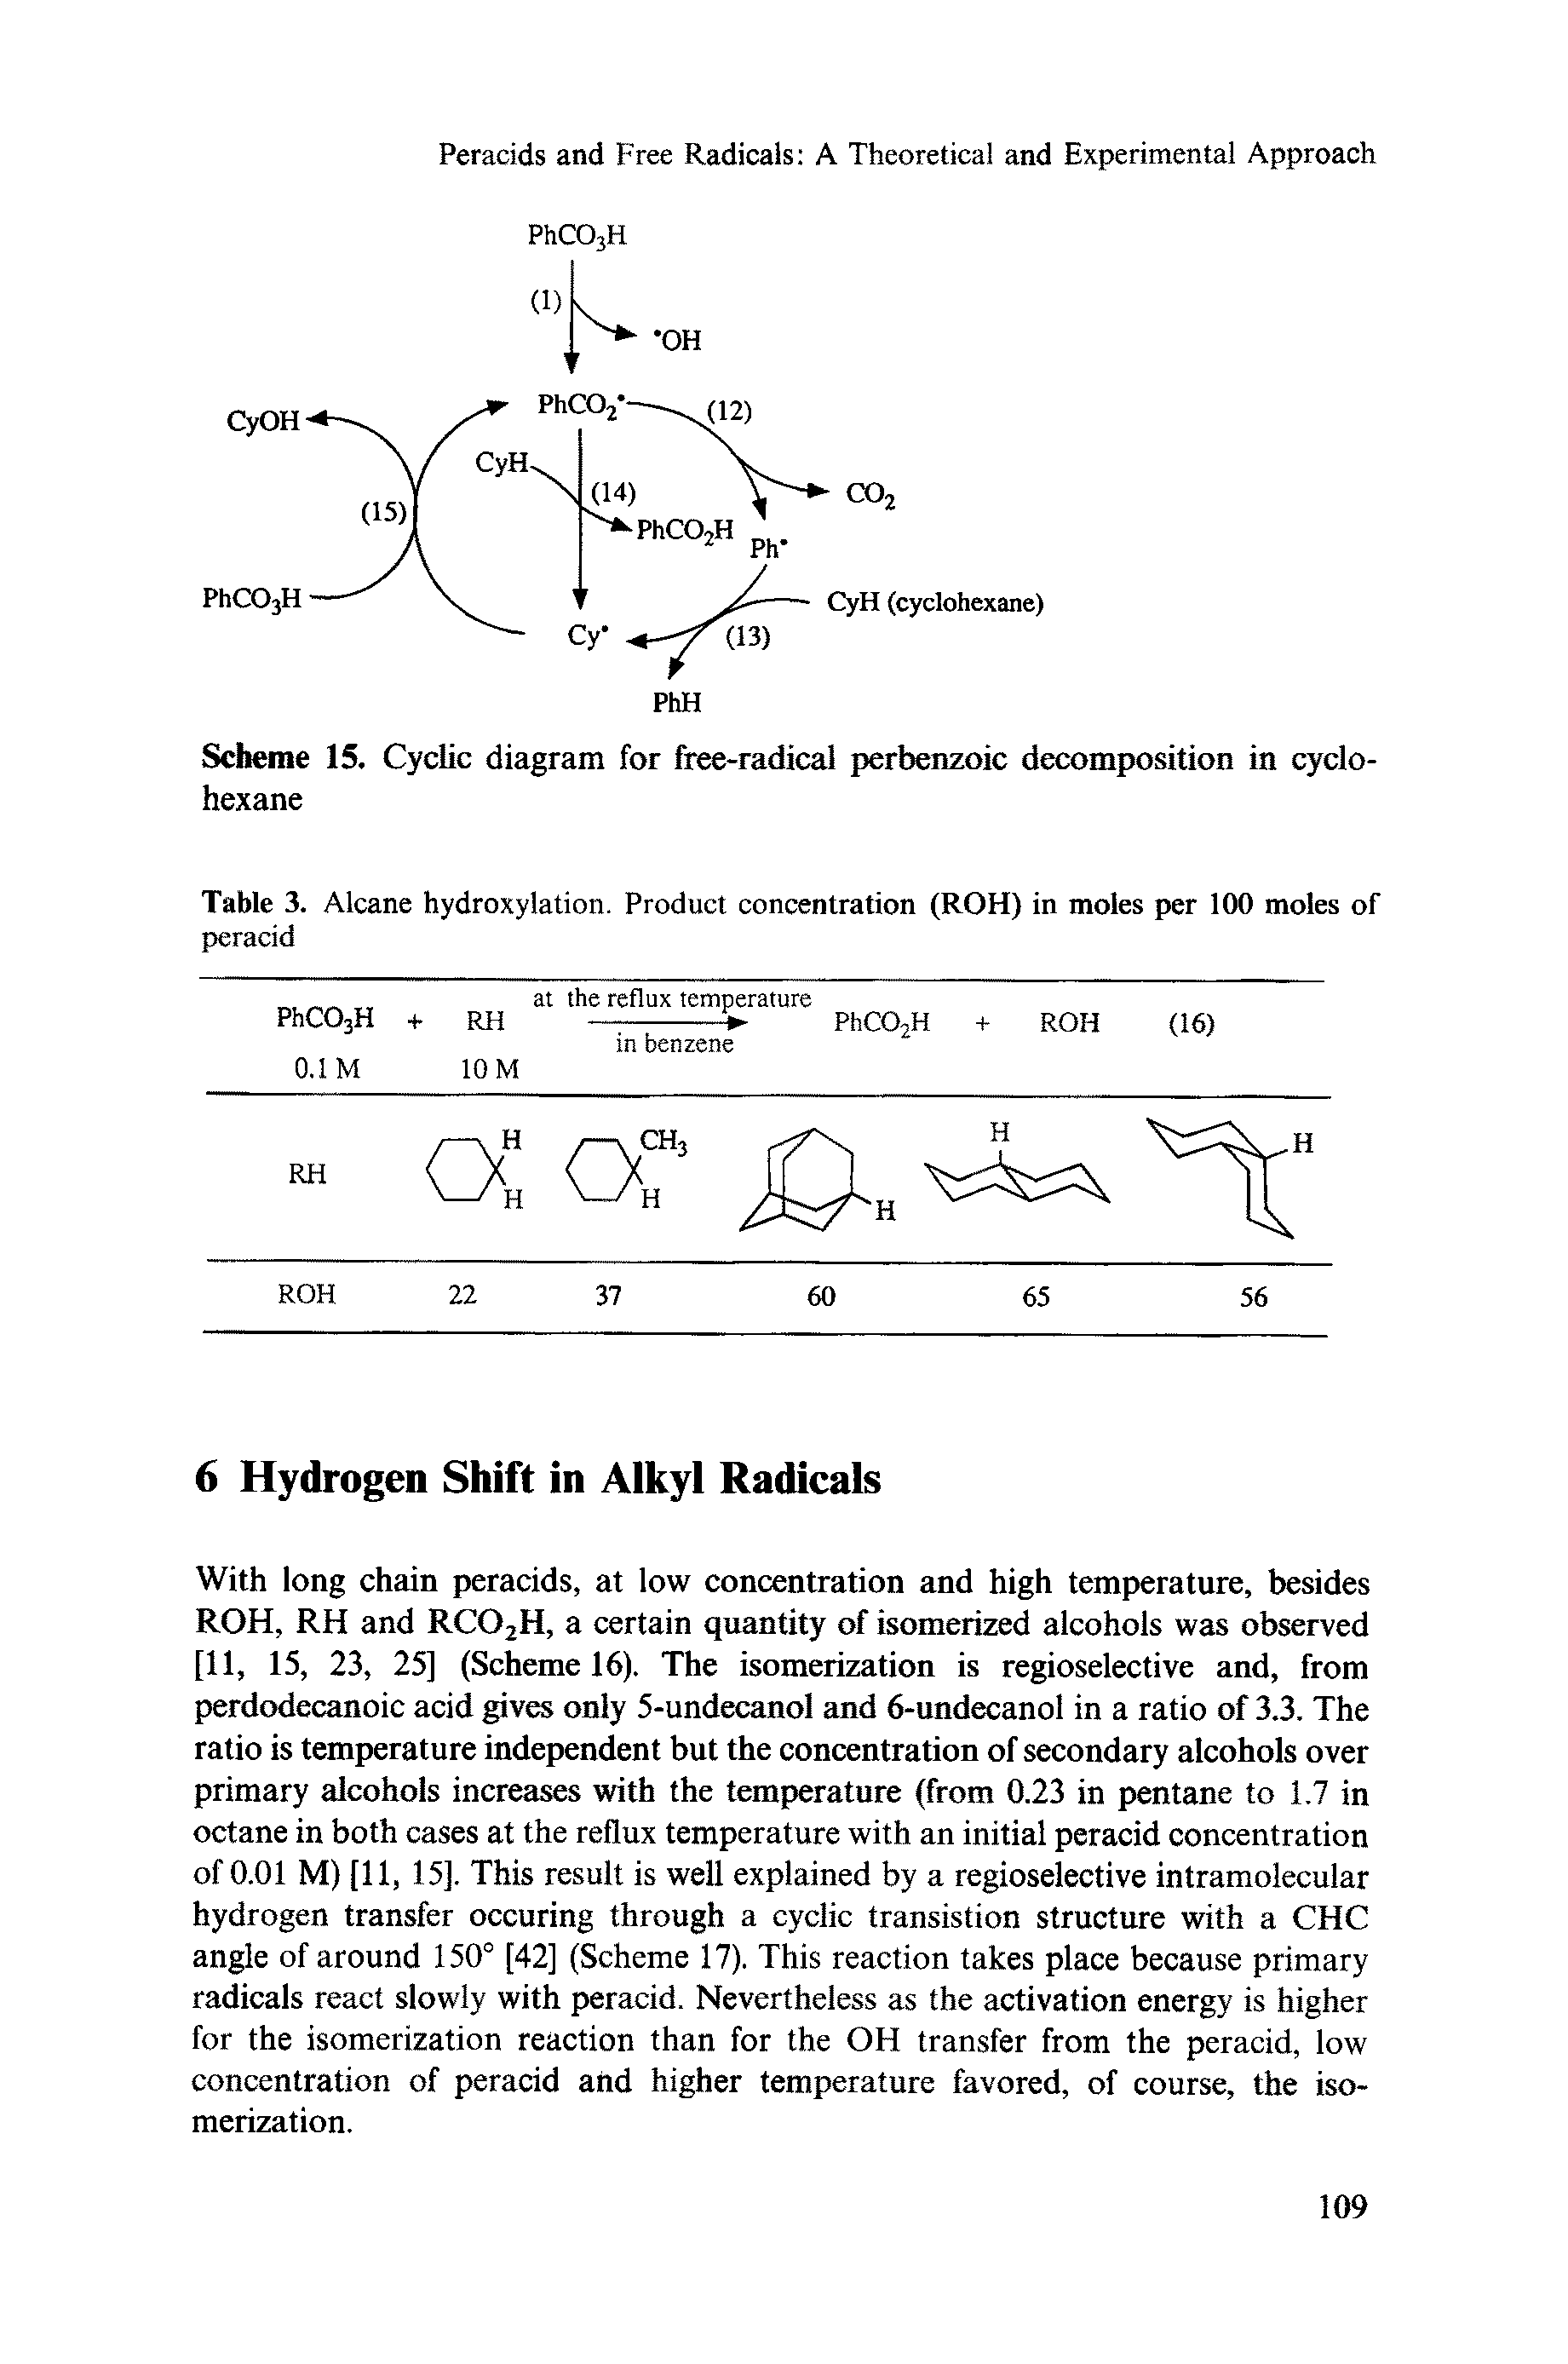 Scheme 15. Cyclic diagram for free-radical perbenzoic decomposition in cyclohexane...